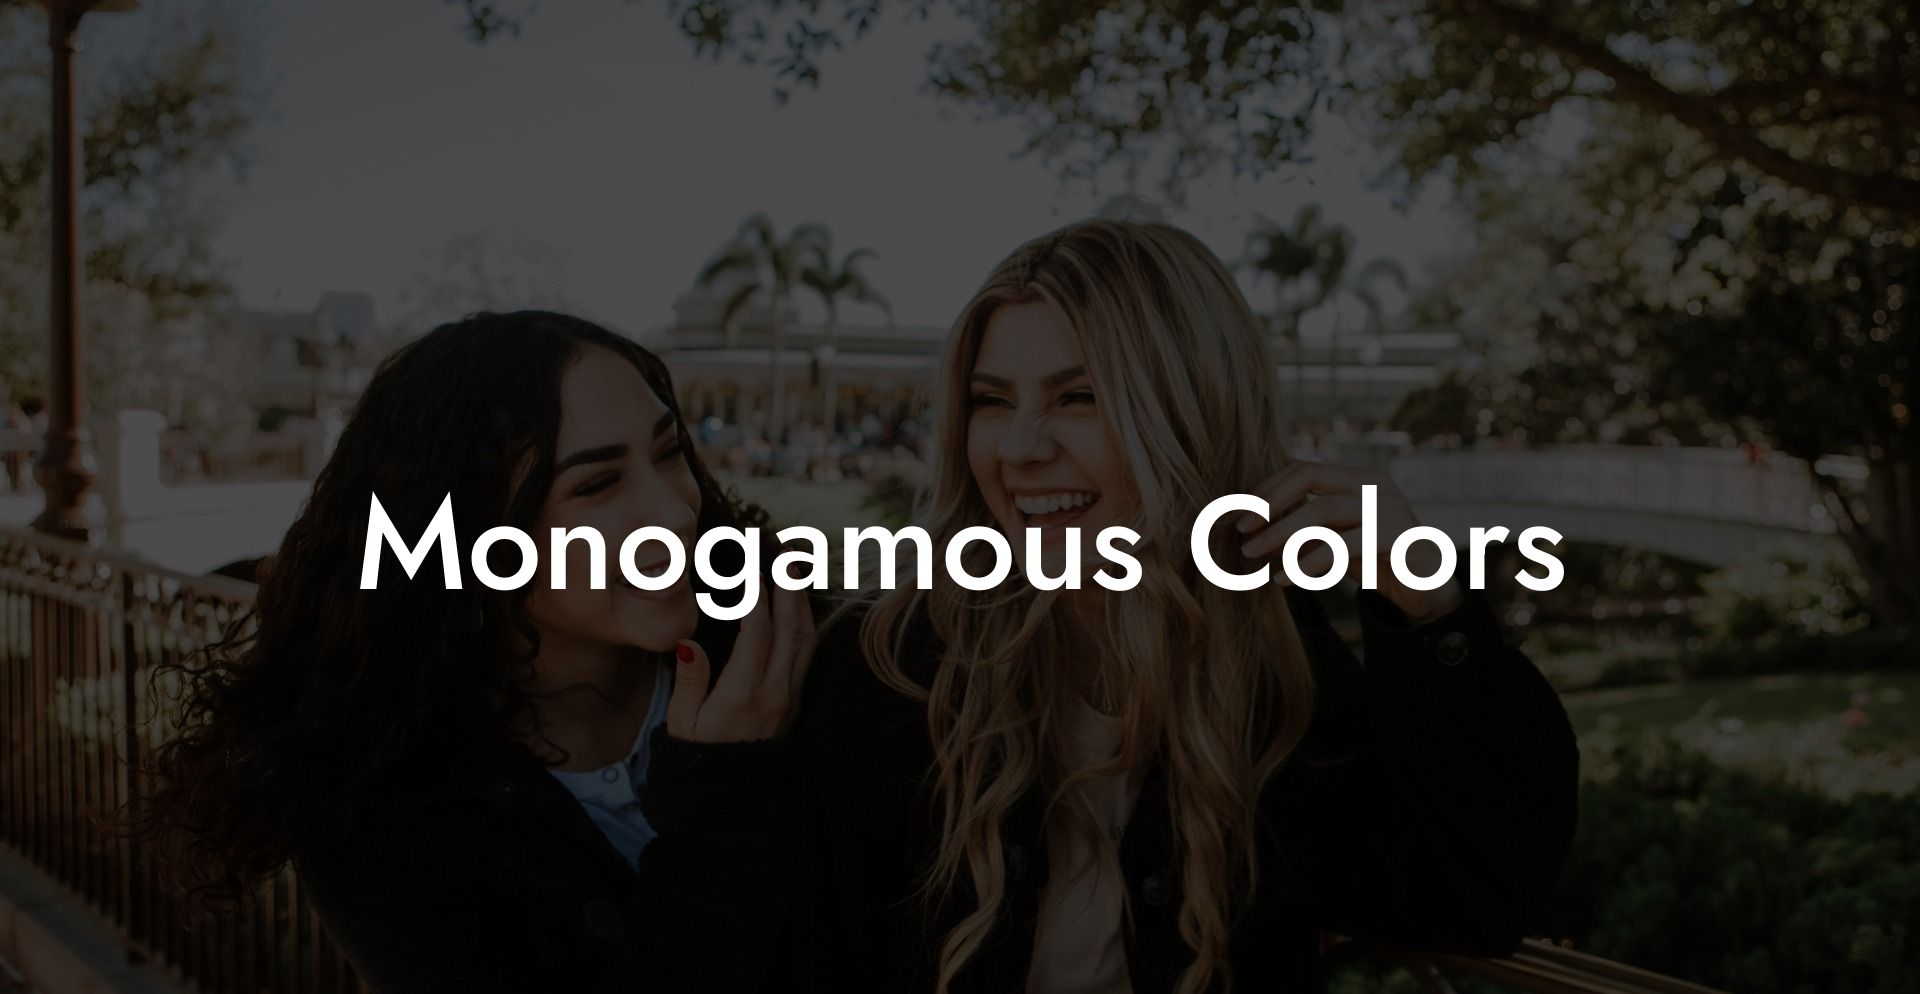 Monogamous Colors